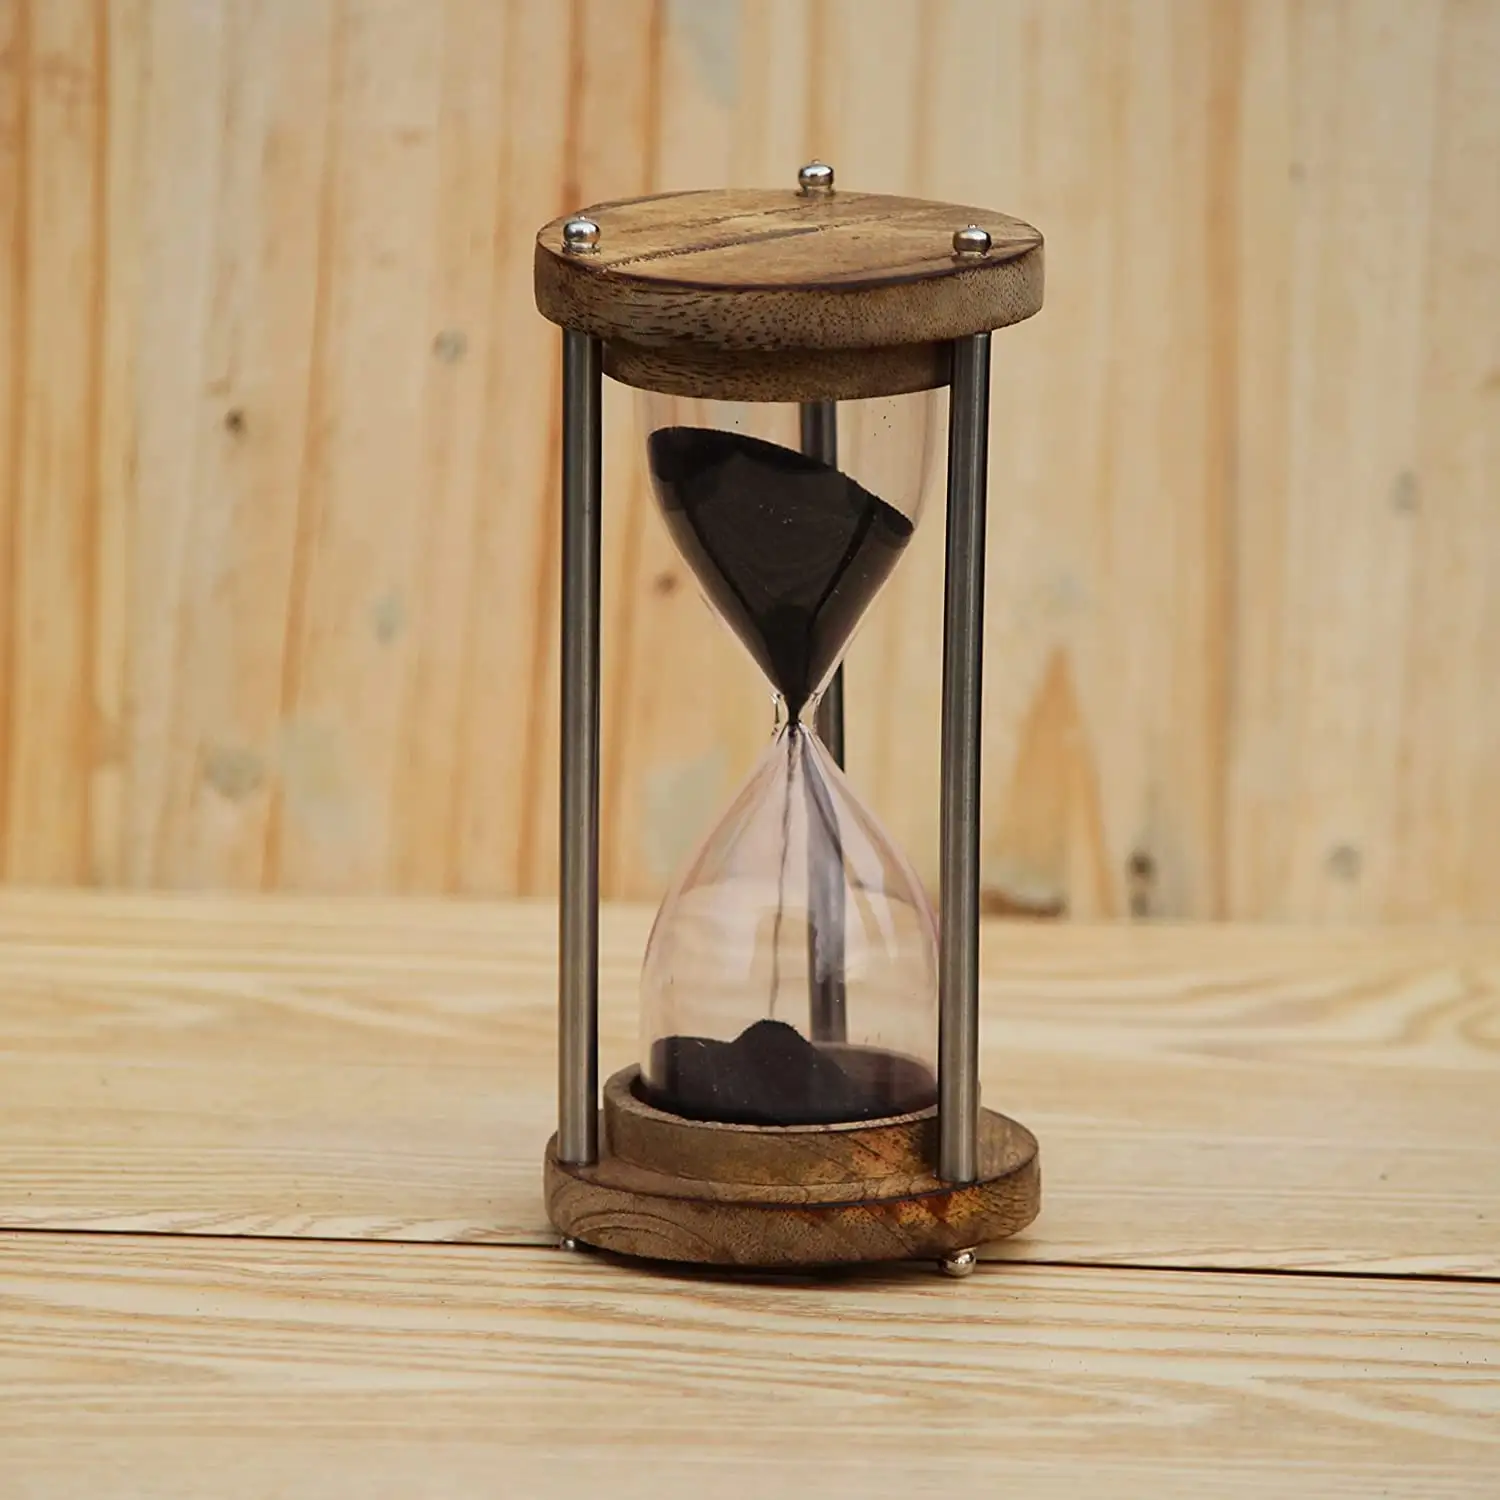 นาฬิกาจับเวลาทรายไม้ นาฬิกาจับเวลาทรายสีดํา 6" 5 นาฬิกาจับเวลาทราย นาฬิกาทราย ของตกแต่งบ้าน ของตกแต่งโต๊ะ ใช้สําหรับโชว์เวลา